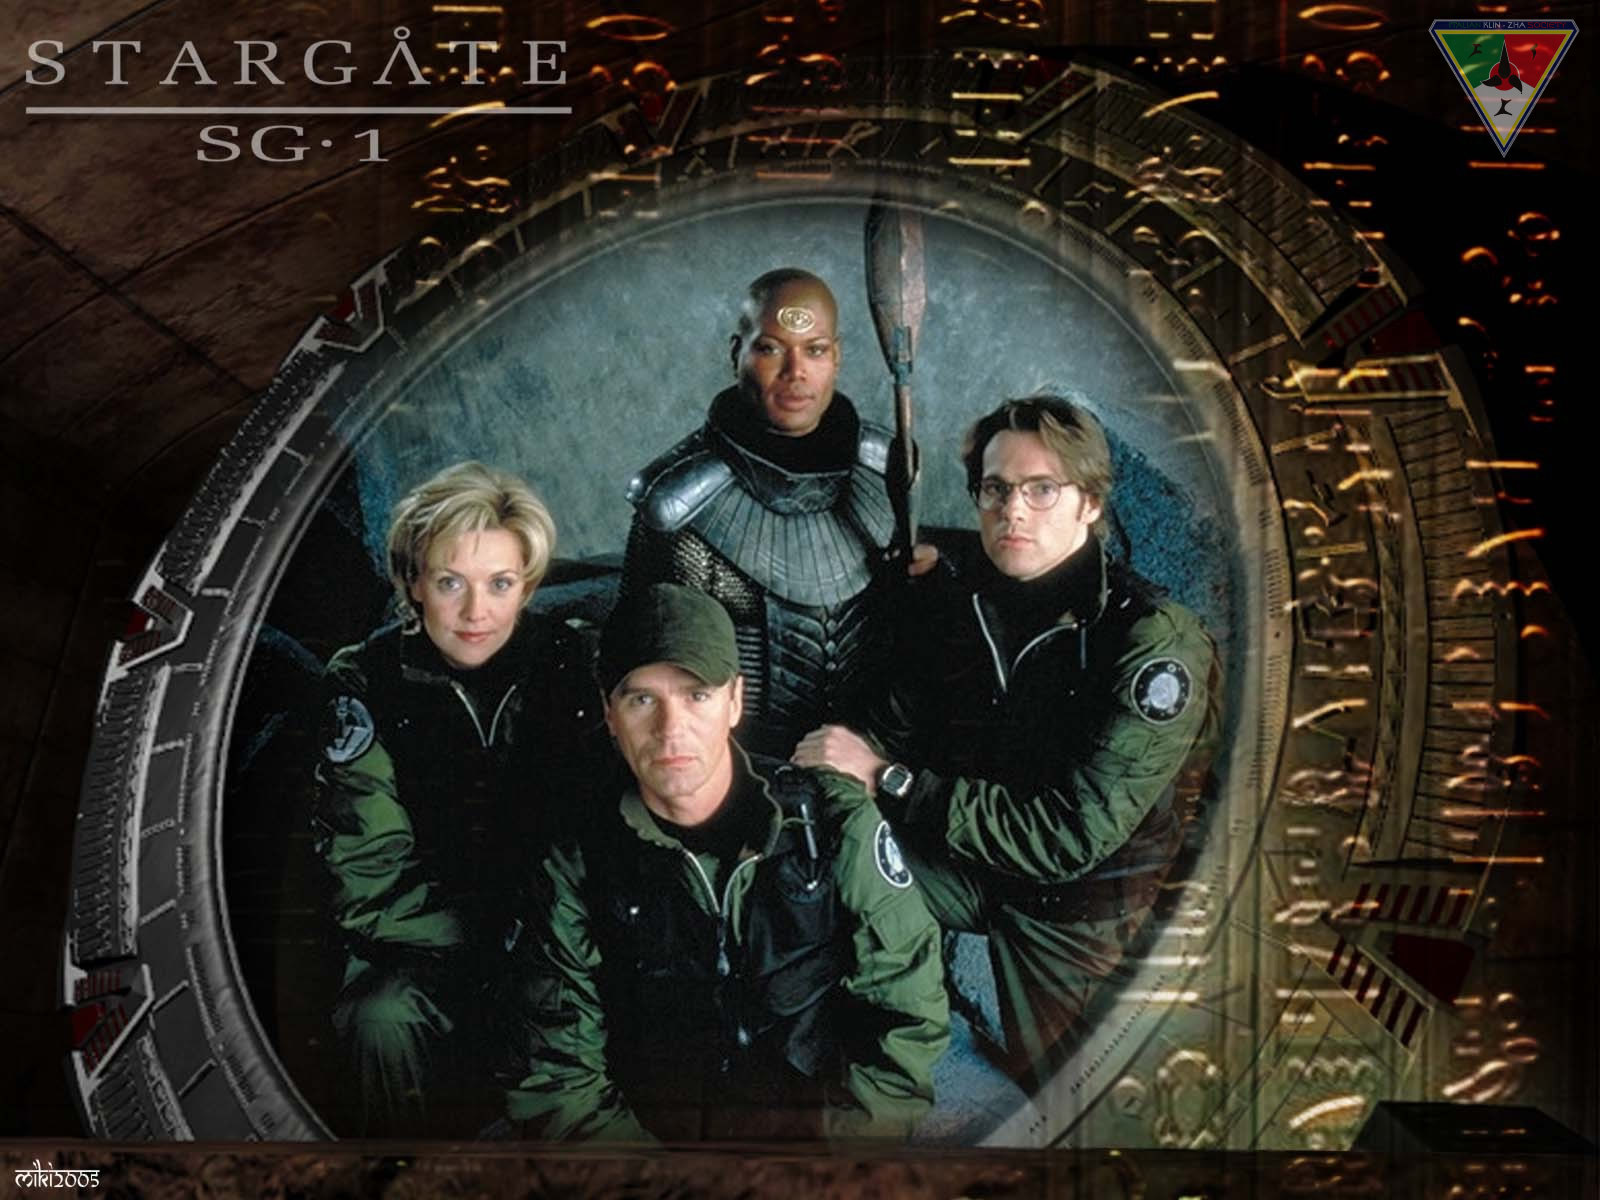 Звездные врата зв 1 отзывы. Stargate sg1. Звёздные врата: SG-1 200. Звёздные врата sg1 (зв1 первый отряд)1 фотографии.